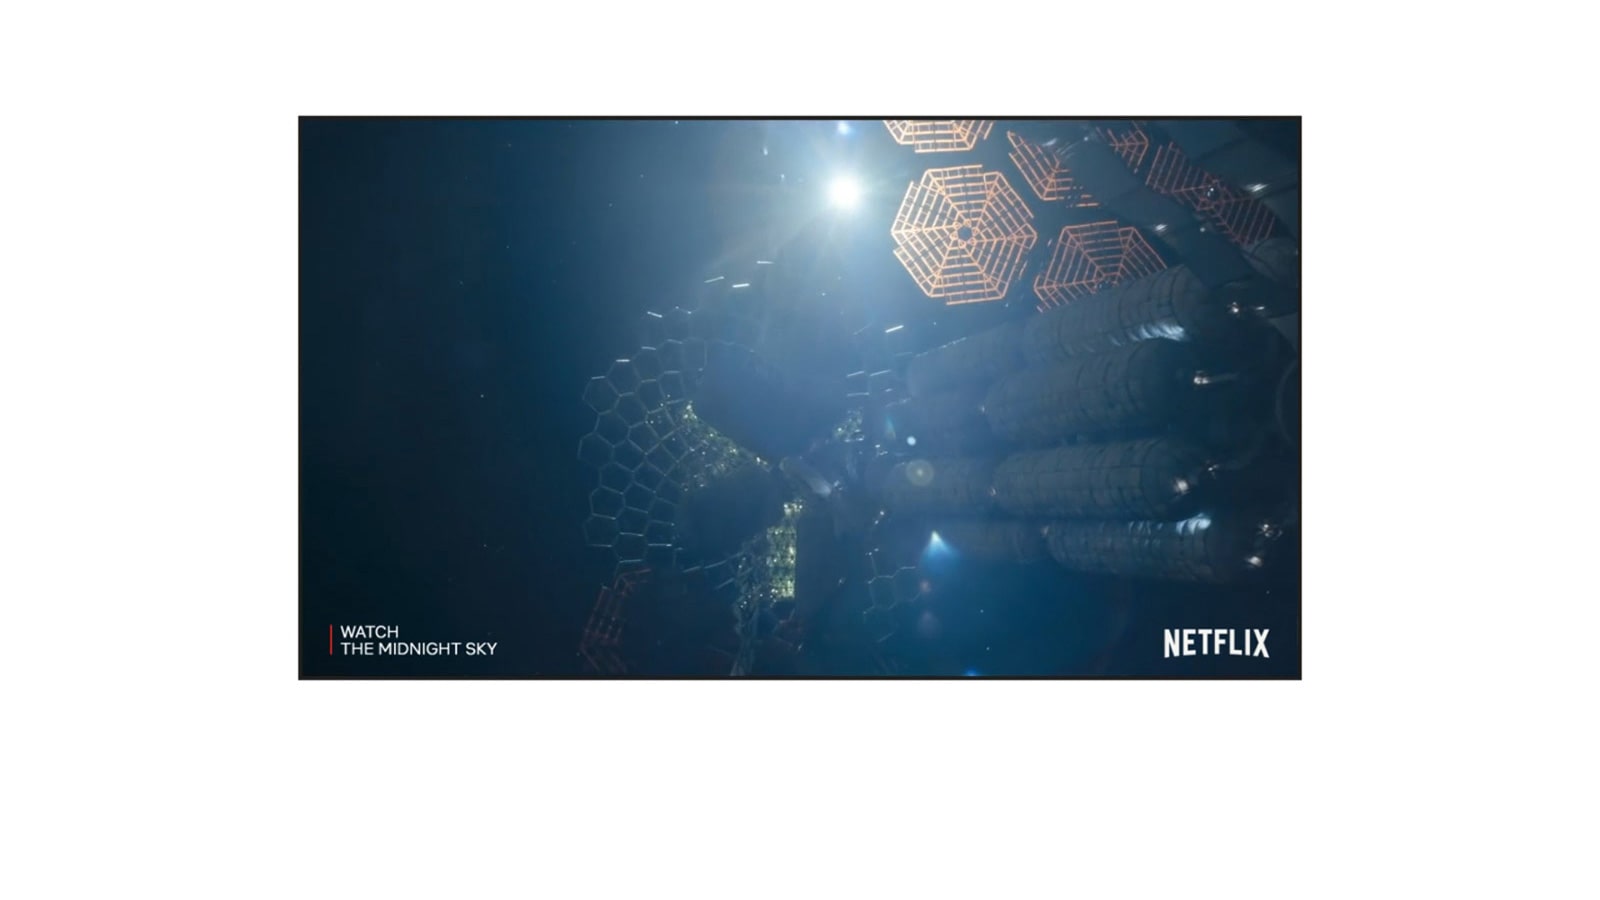 Екран телевізора, який показує трейлер серіалу «Опівнічне небо» від Netflix (відтворення відео).